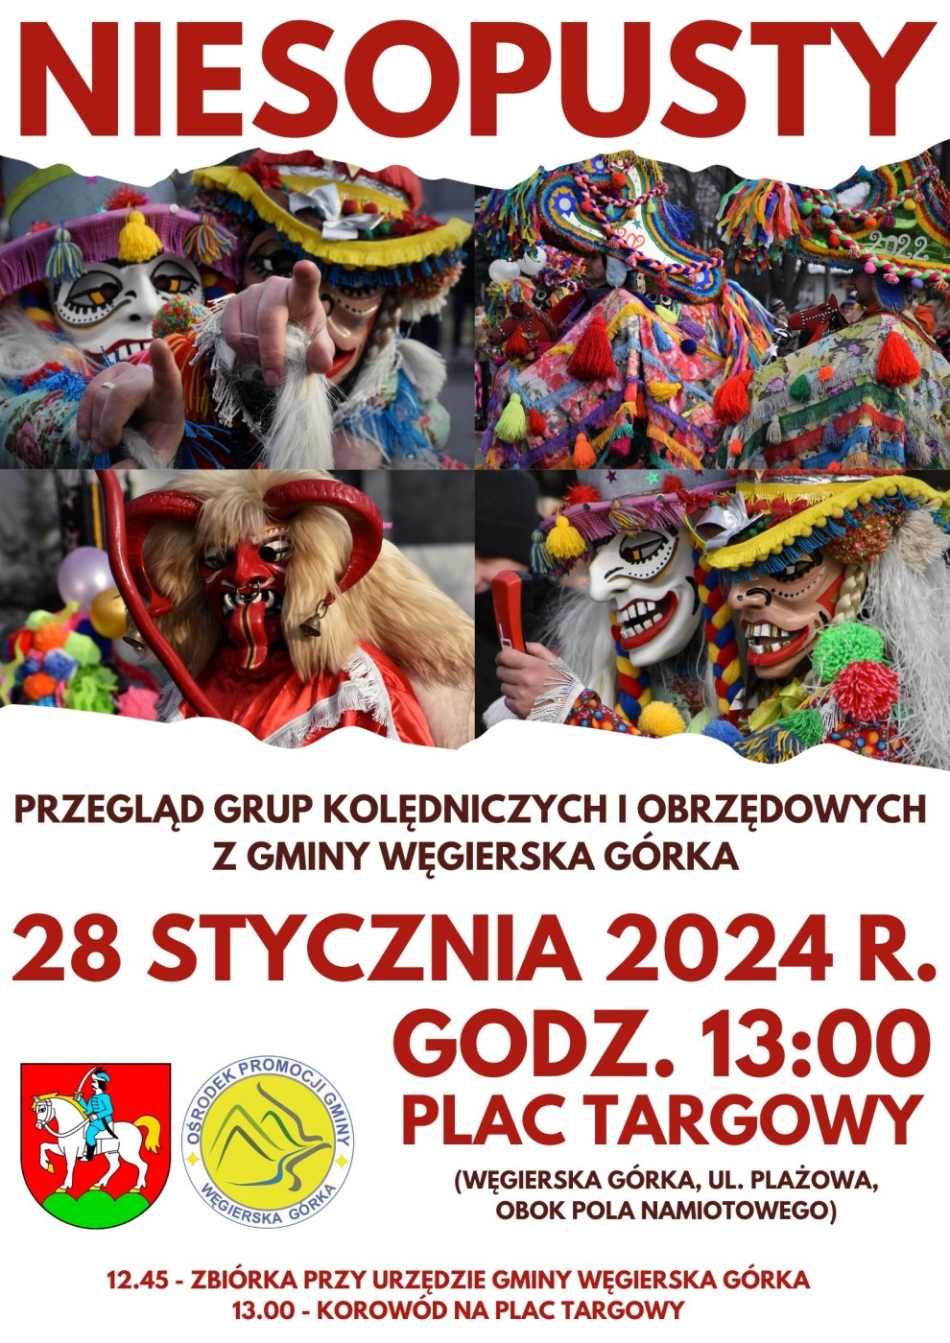 NIESOPUSTY 2024 – Przegląd Grup Kolędniczych i Obrzędowych z gminy Węgierska Górka.